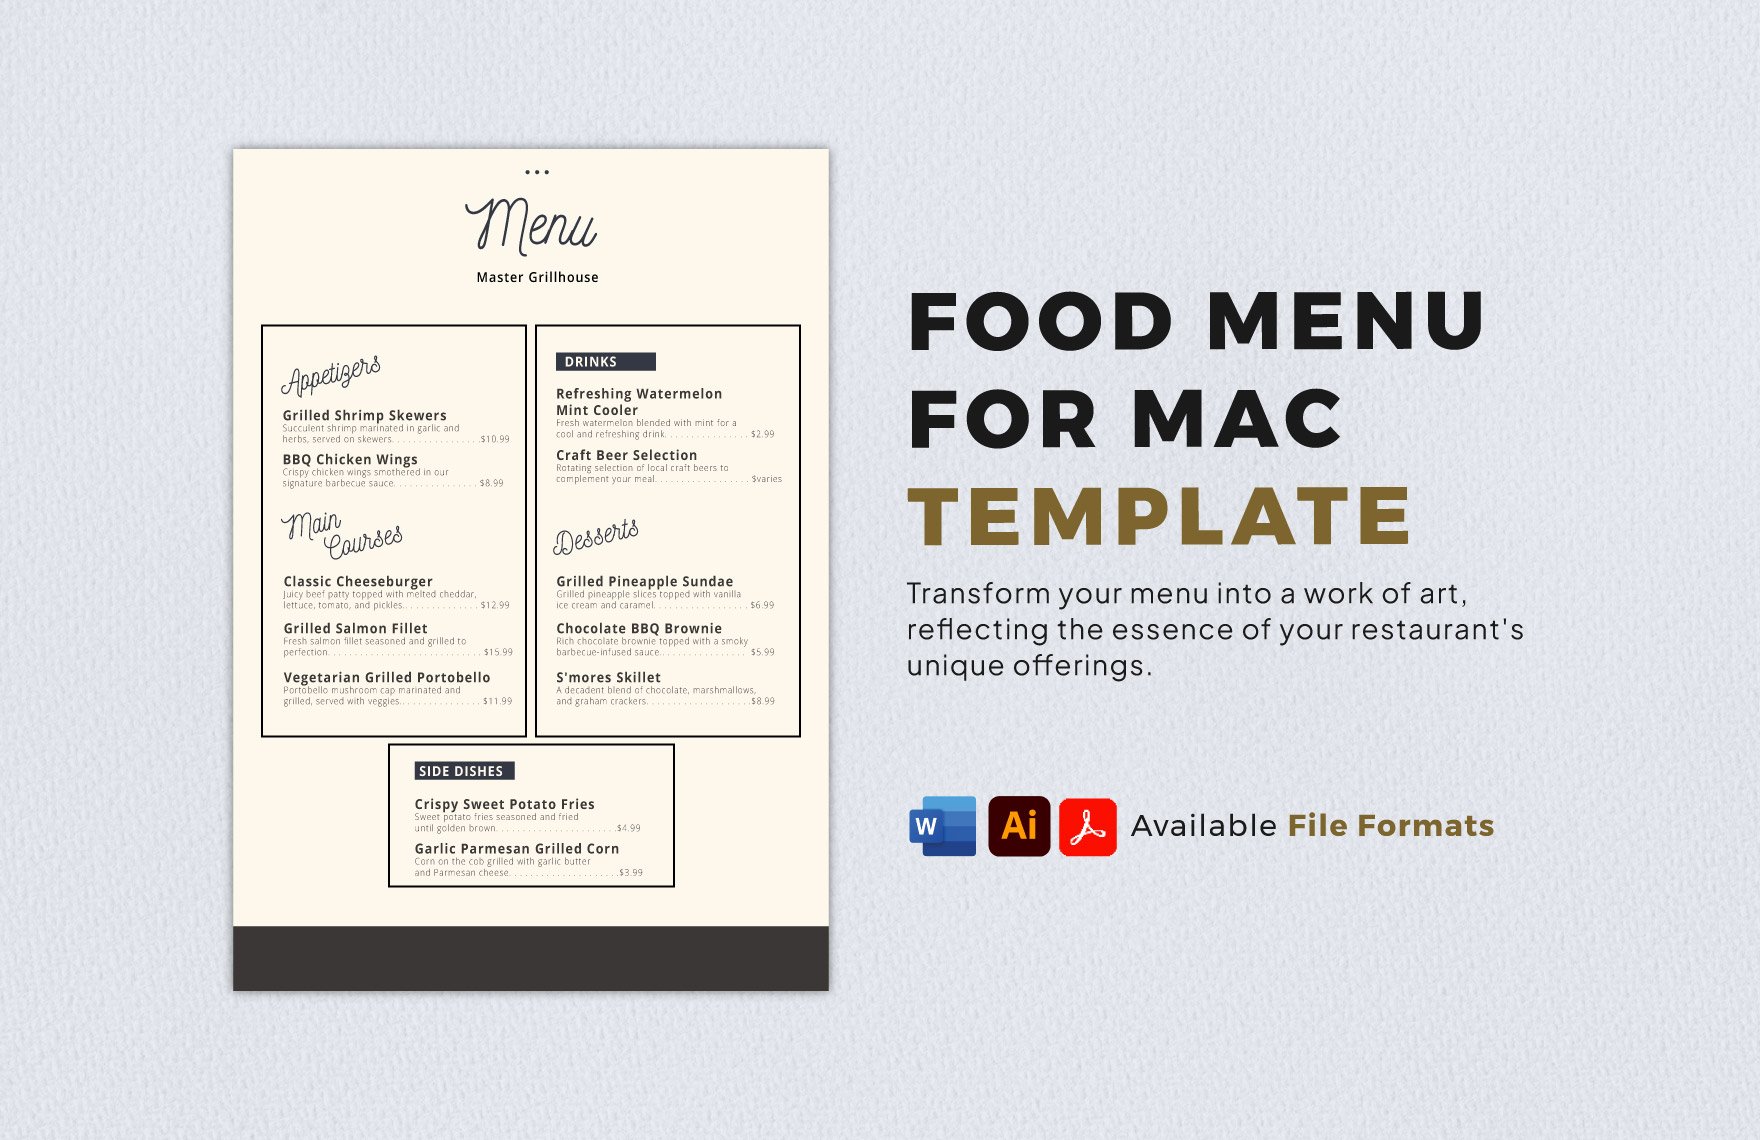 Food Menu for Mac Template